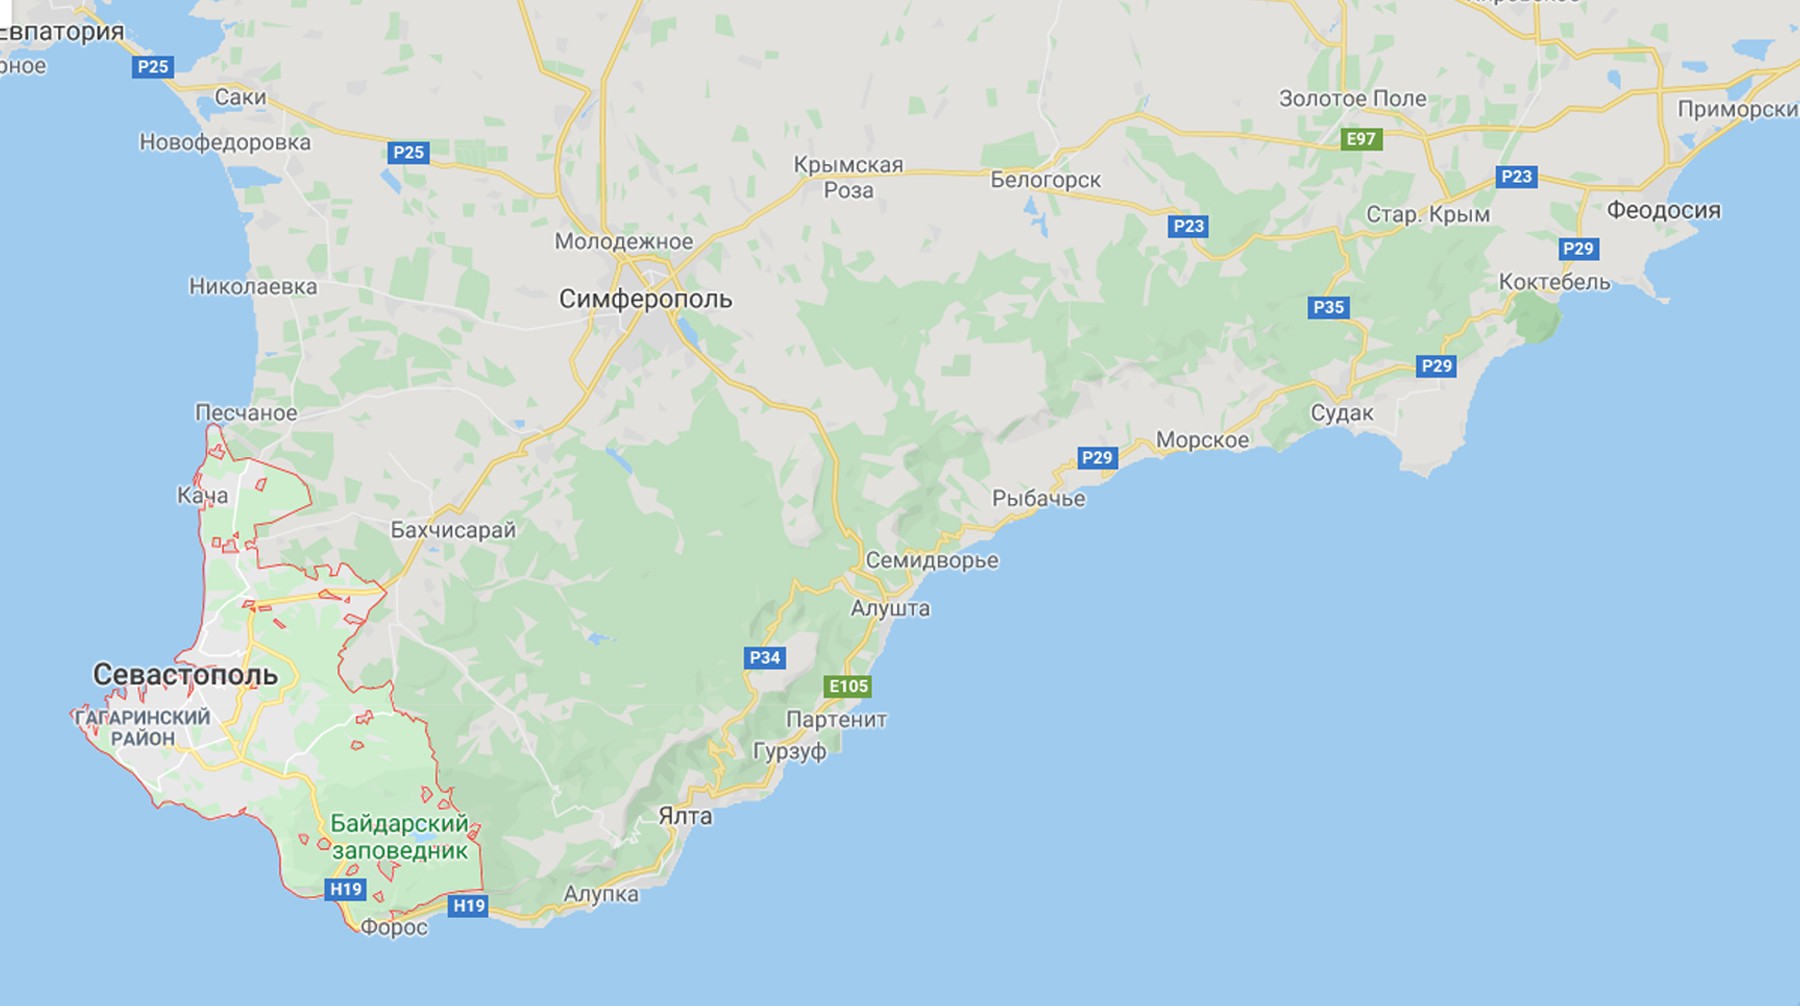 Dailystorm - Граница проведена: Крым и Севастополь подписали договор